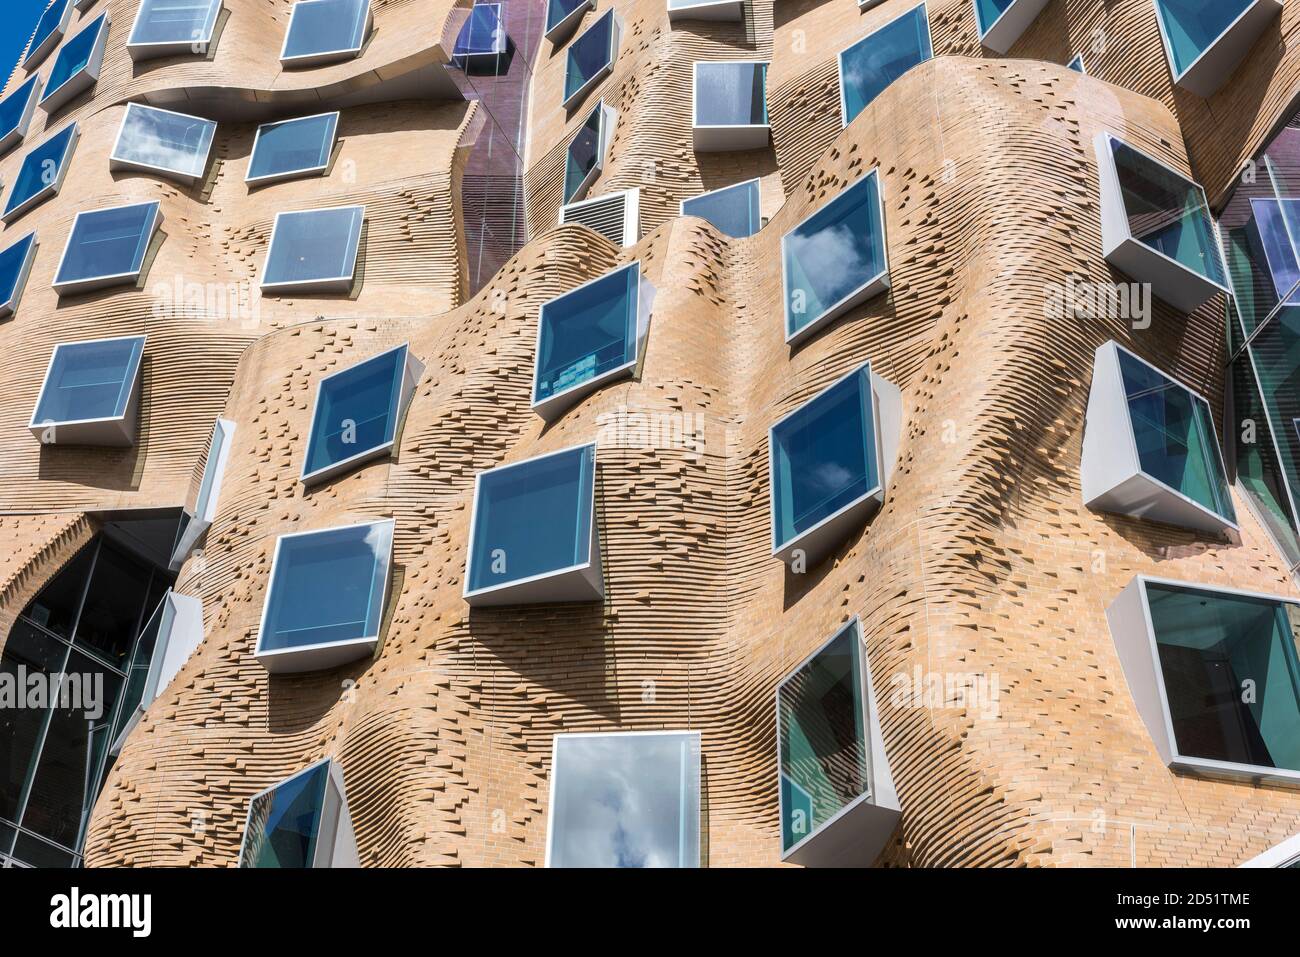 Vue détaillée d'un mur de briques ondulant. Dr Chau Chak Wing Building, UTS Business School, Sydney, Australie. Architecte: Gehry Partners, LLP, 2015. Banque D'Images